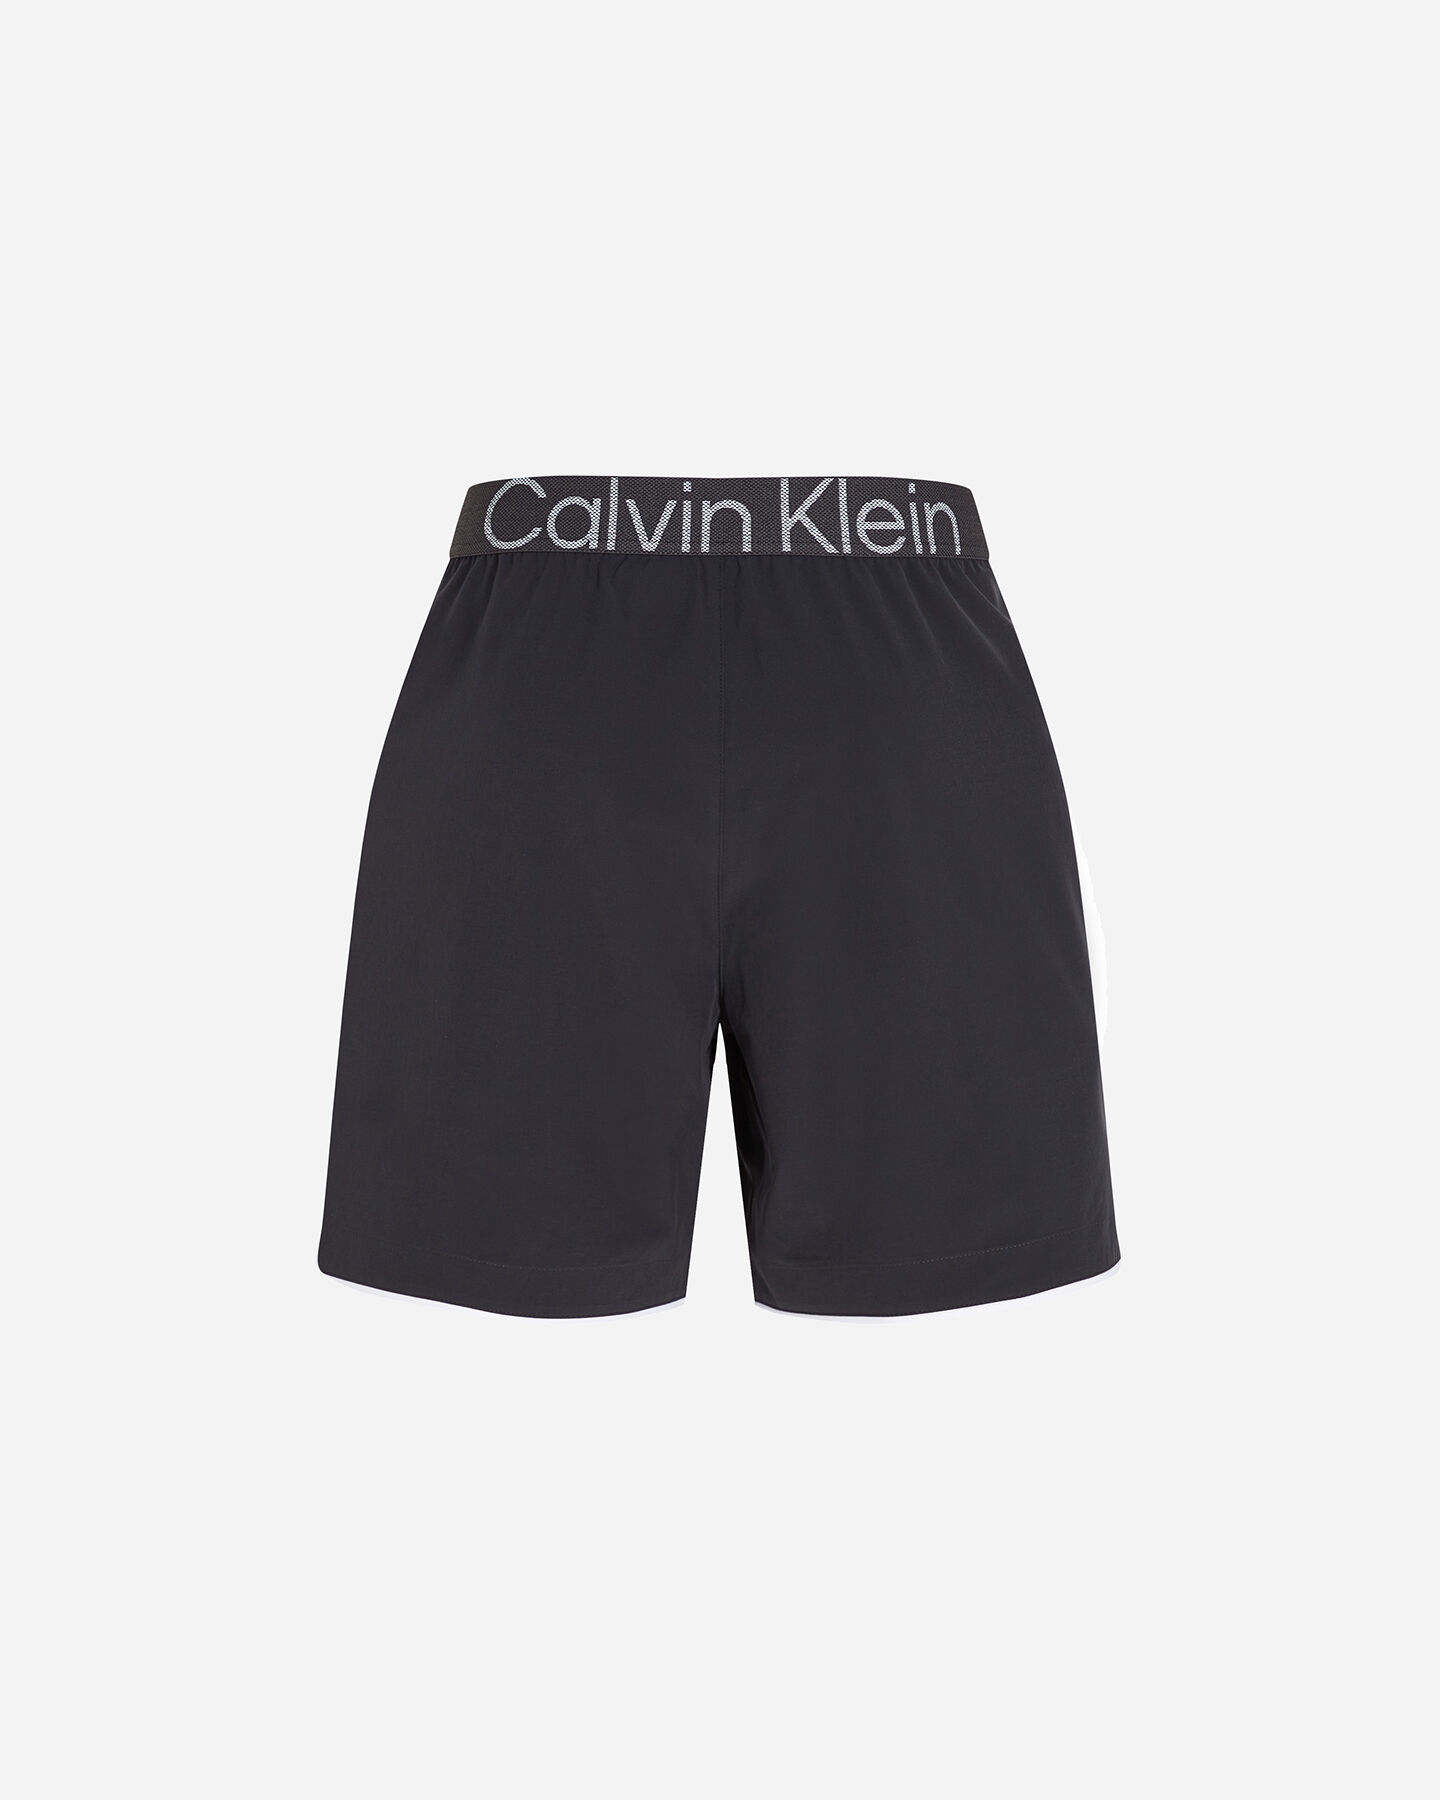  Pantaloncini CALVIN KLEIN SPORT ICON M S4124055|BAE|M scatto 1